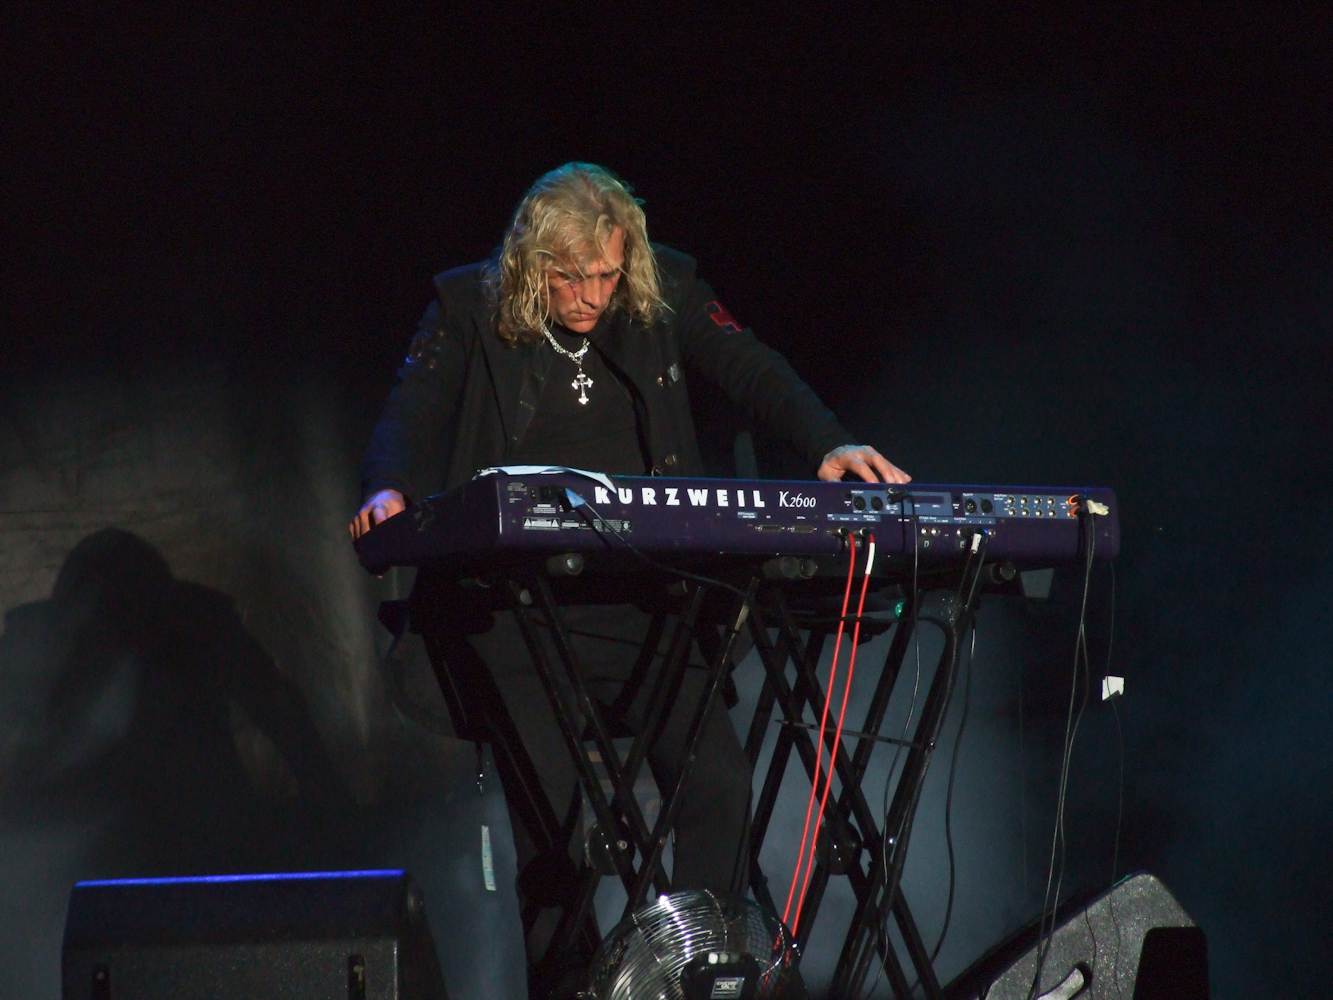 Warren performing in 2012